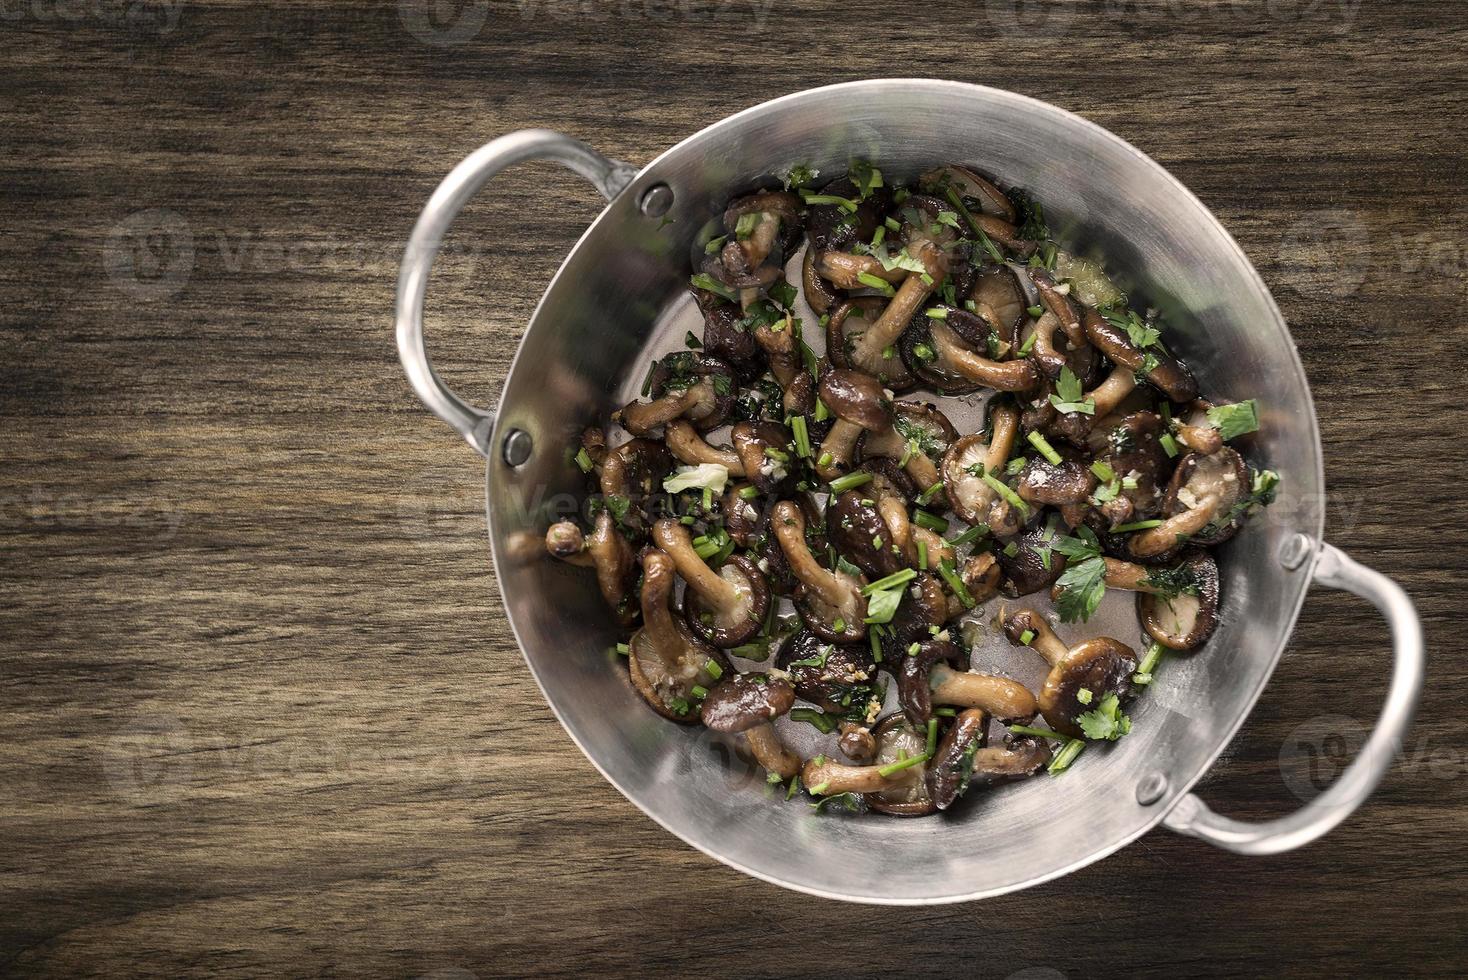 cogumelos shiitake salteados com alho e ervas em uma frigideira de metal foto